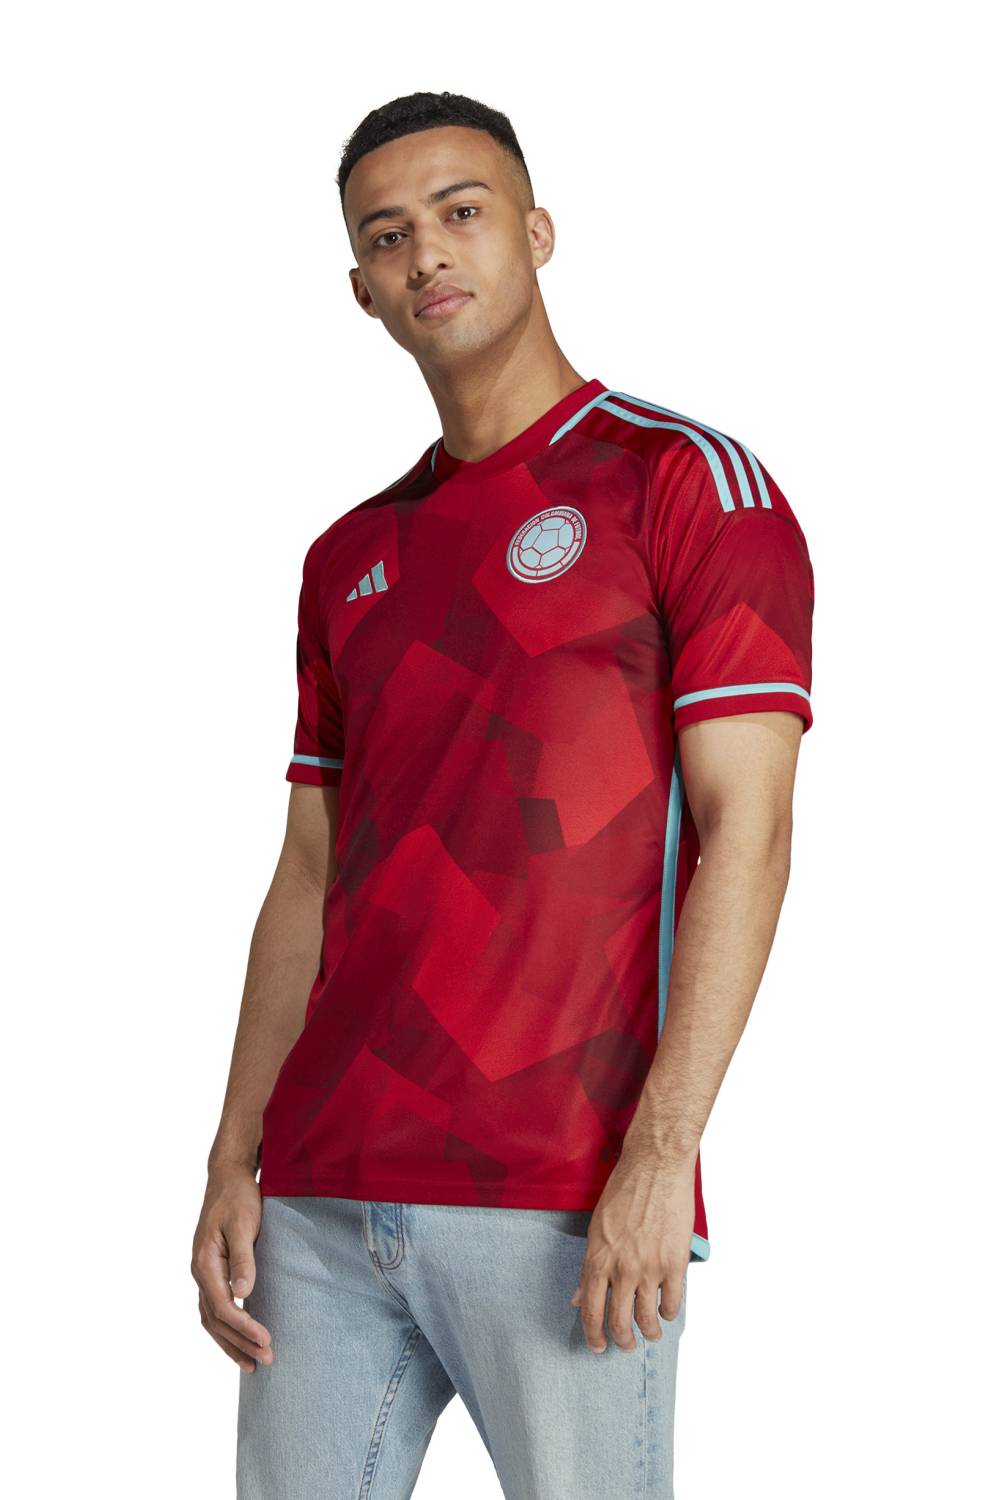 ADIDAS - Camiseta De Fútbol Colombia Entrenamiento Hombre Adidas